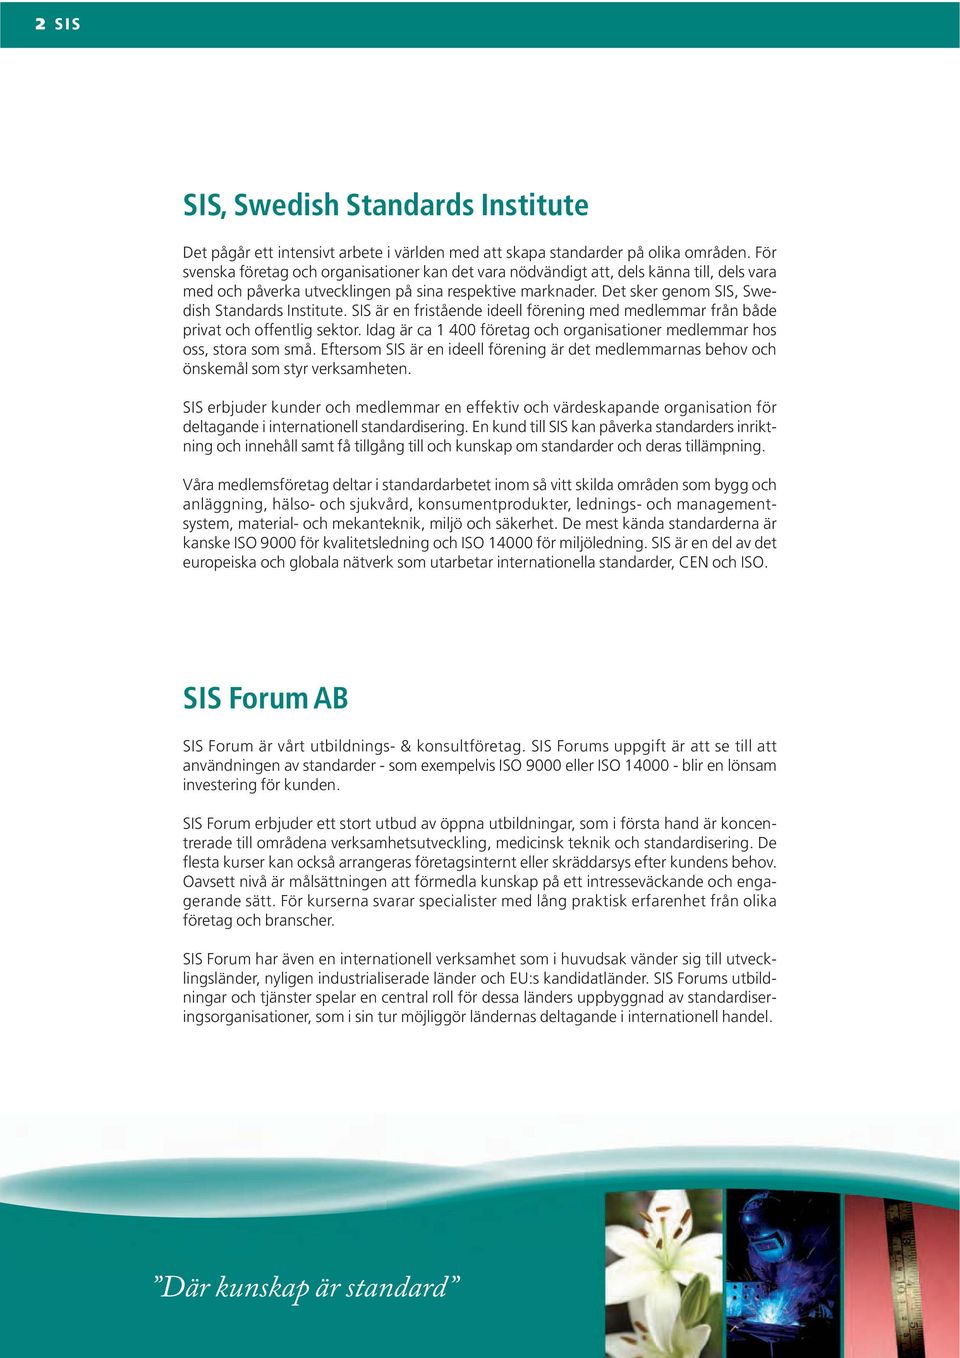 Det sker genom SIS, Swedish Standards Institute. SIS är en fristående ideell förening med medlemmar från både privat och offentlig sektor.